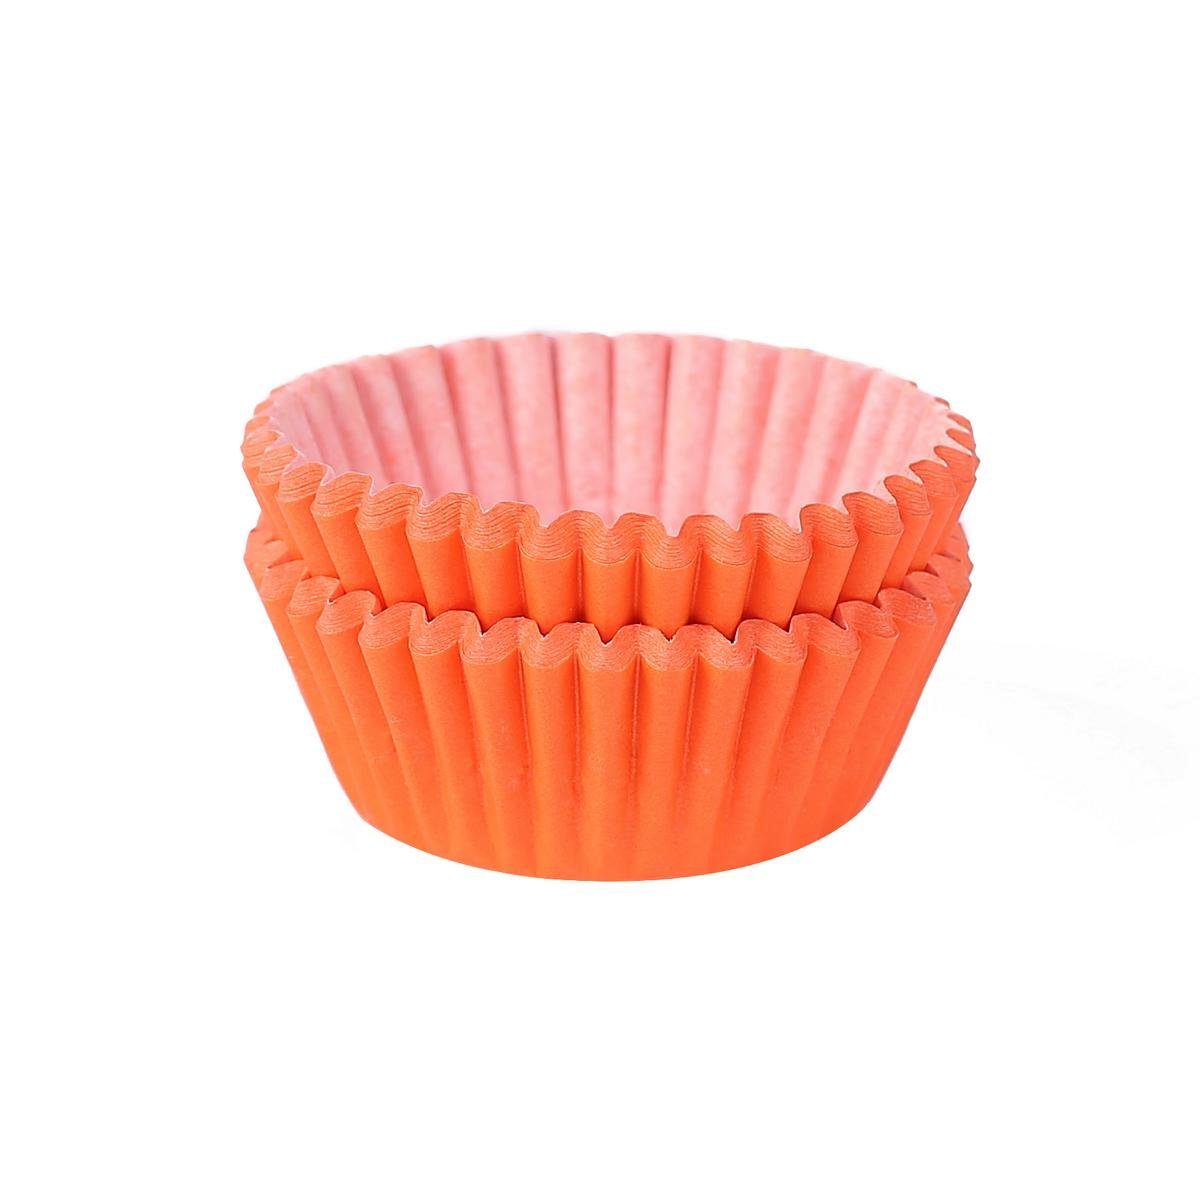 Miss Bakery's House Muffinform Mini Muffinförmchen, (Orange 200-tlg), kleine Papierbackförmchen für Mini-Cupcakes und Minimuffins